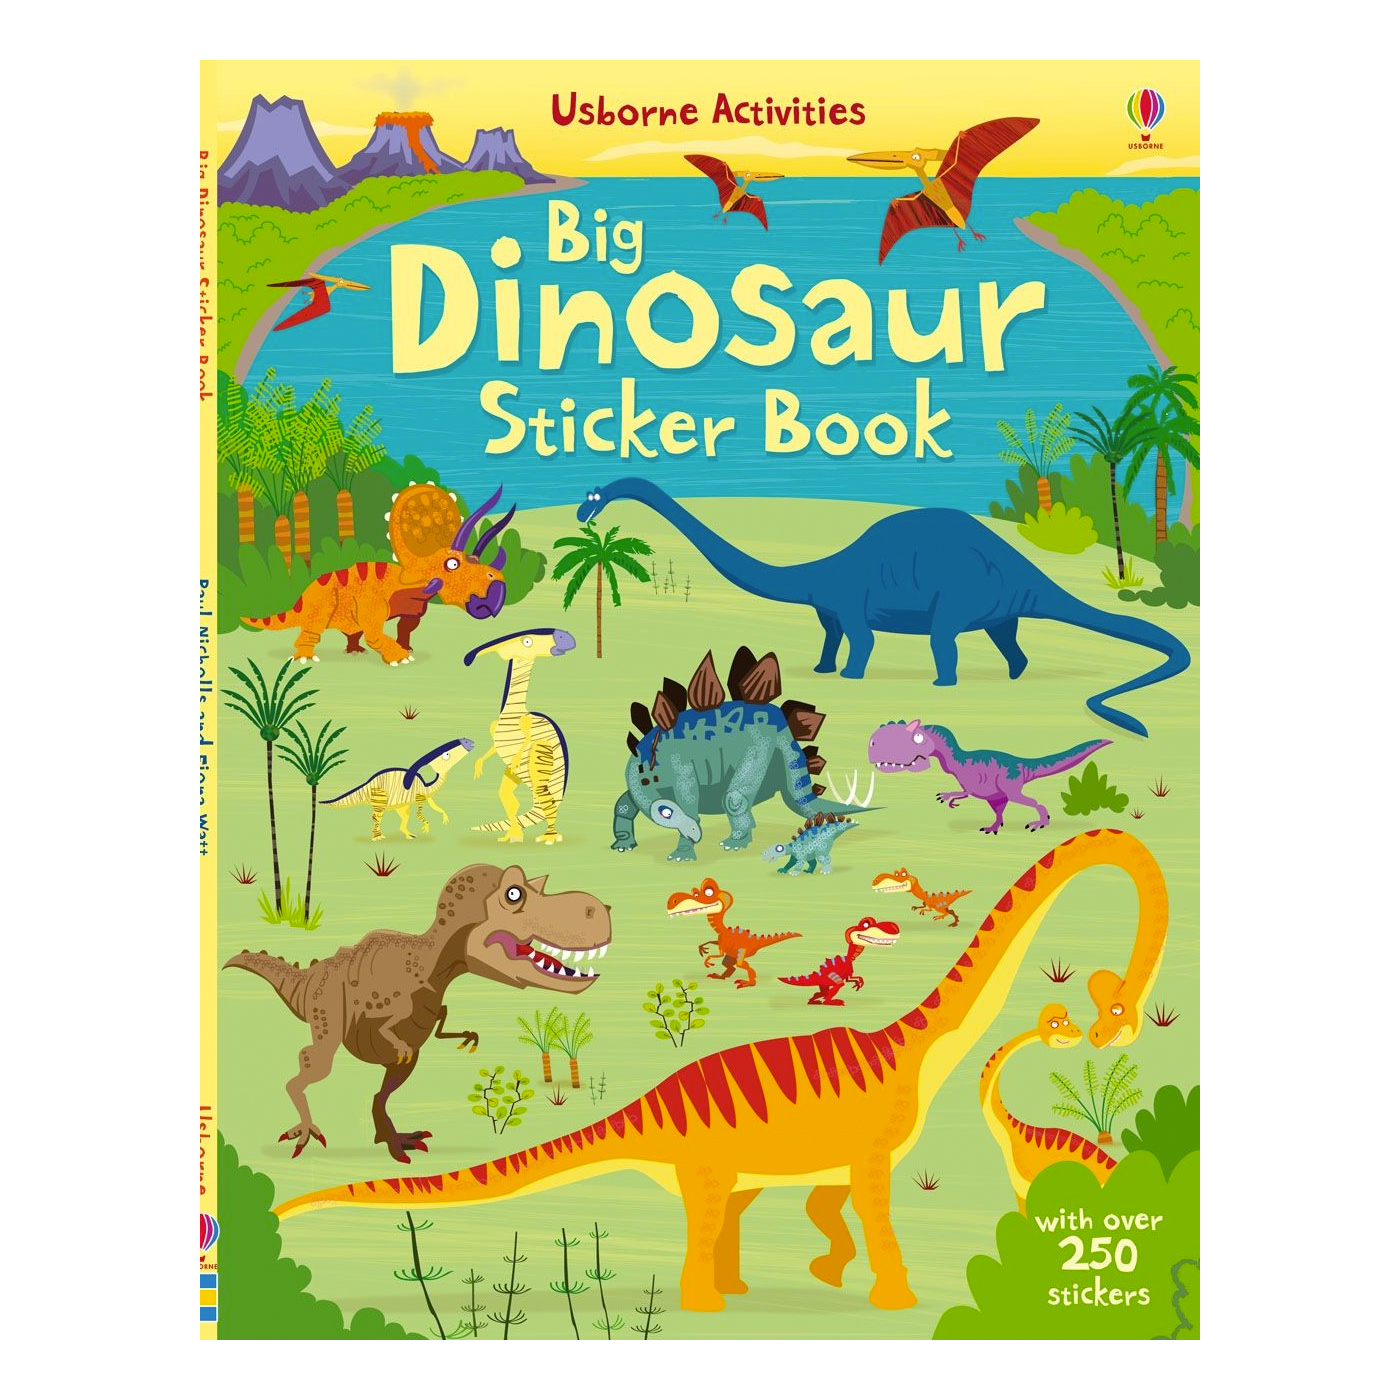  Big Dinosaur Sticker Book